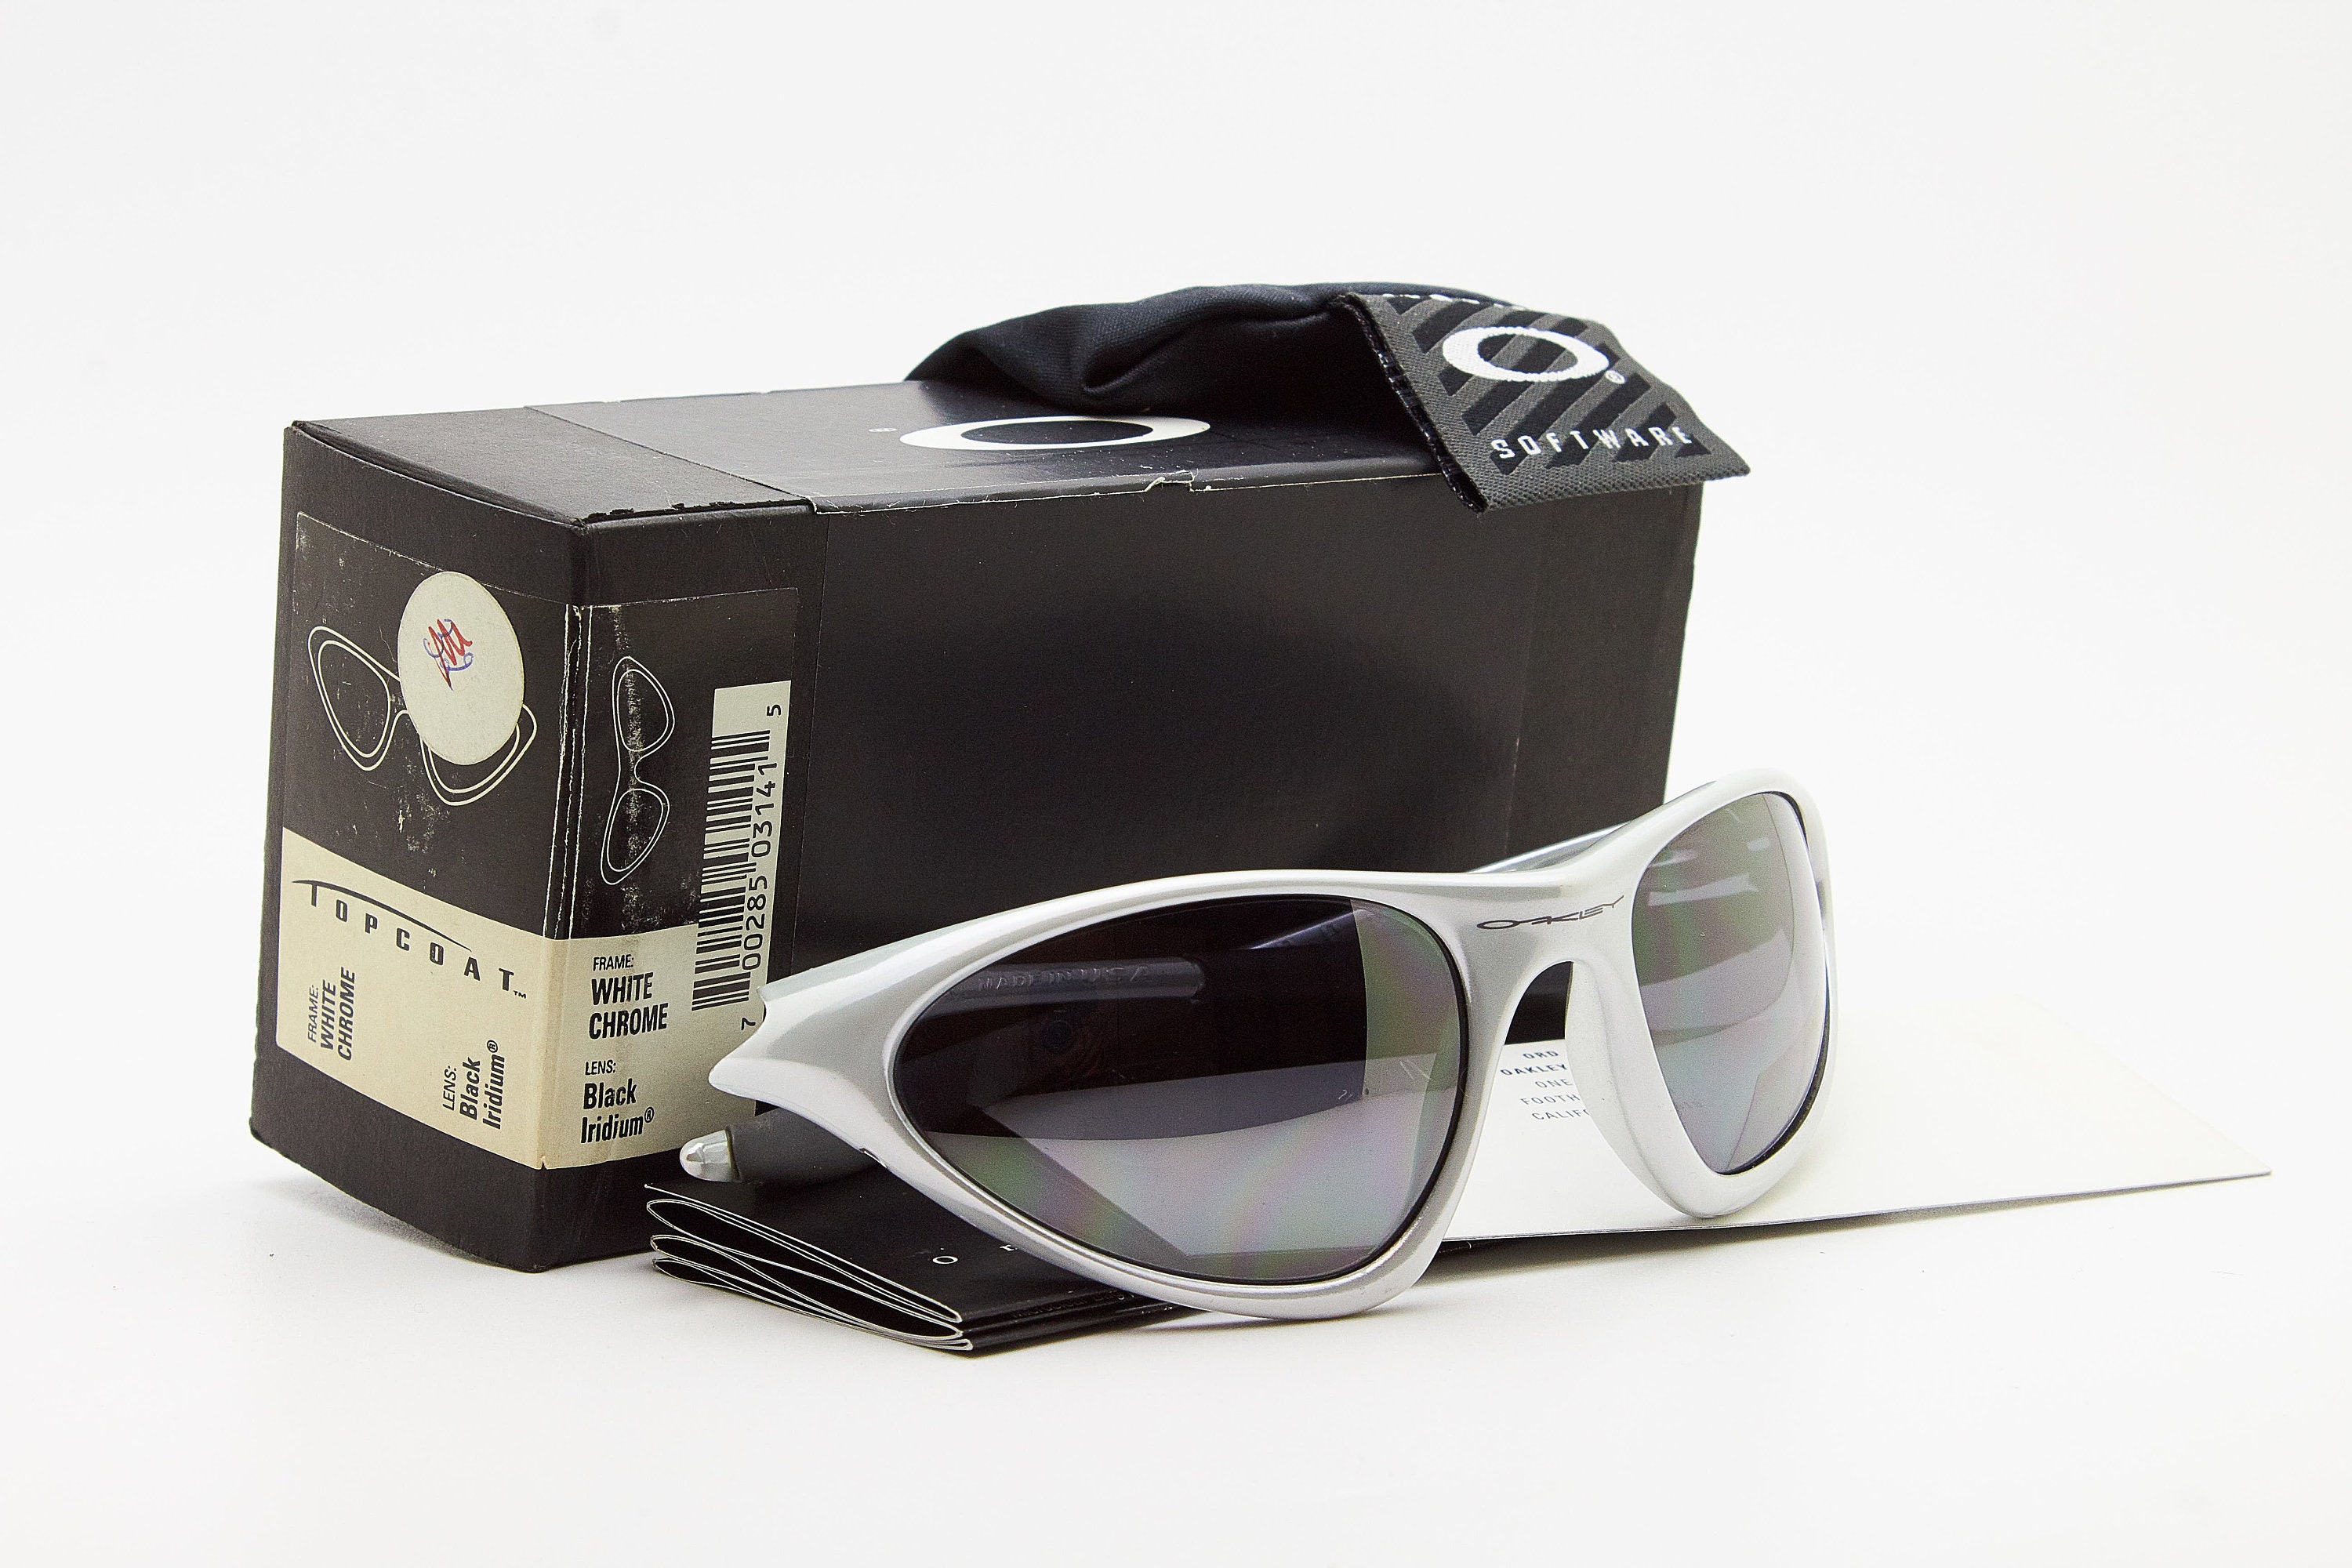 Vintage Sunglasses TOPCOAT White Chrome Frame - Etsy